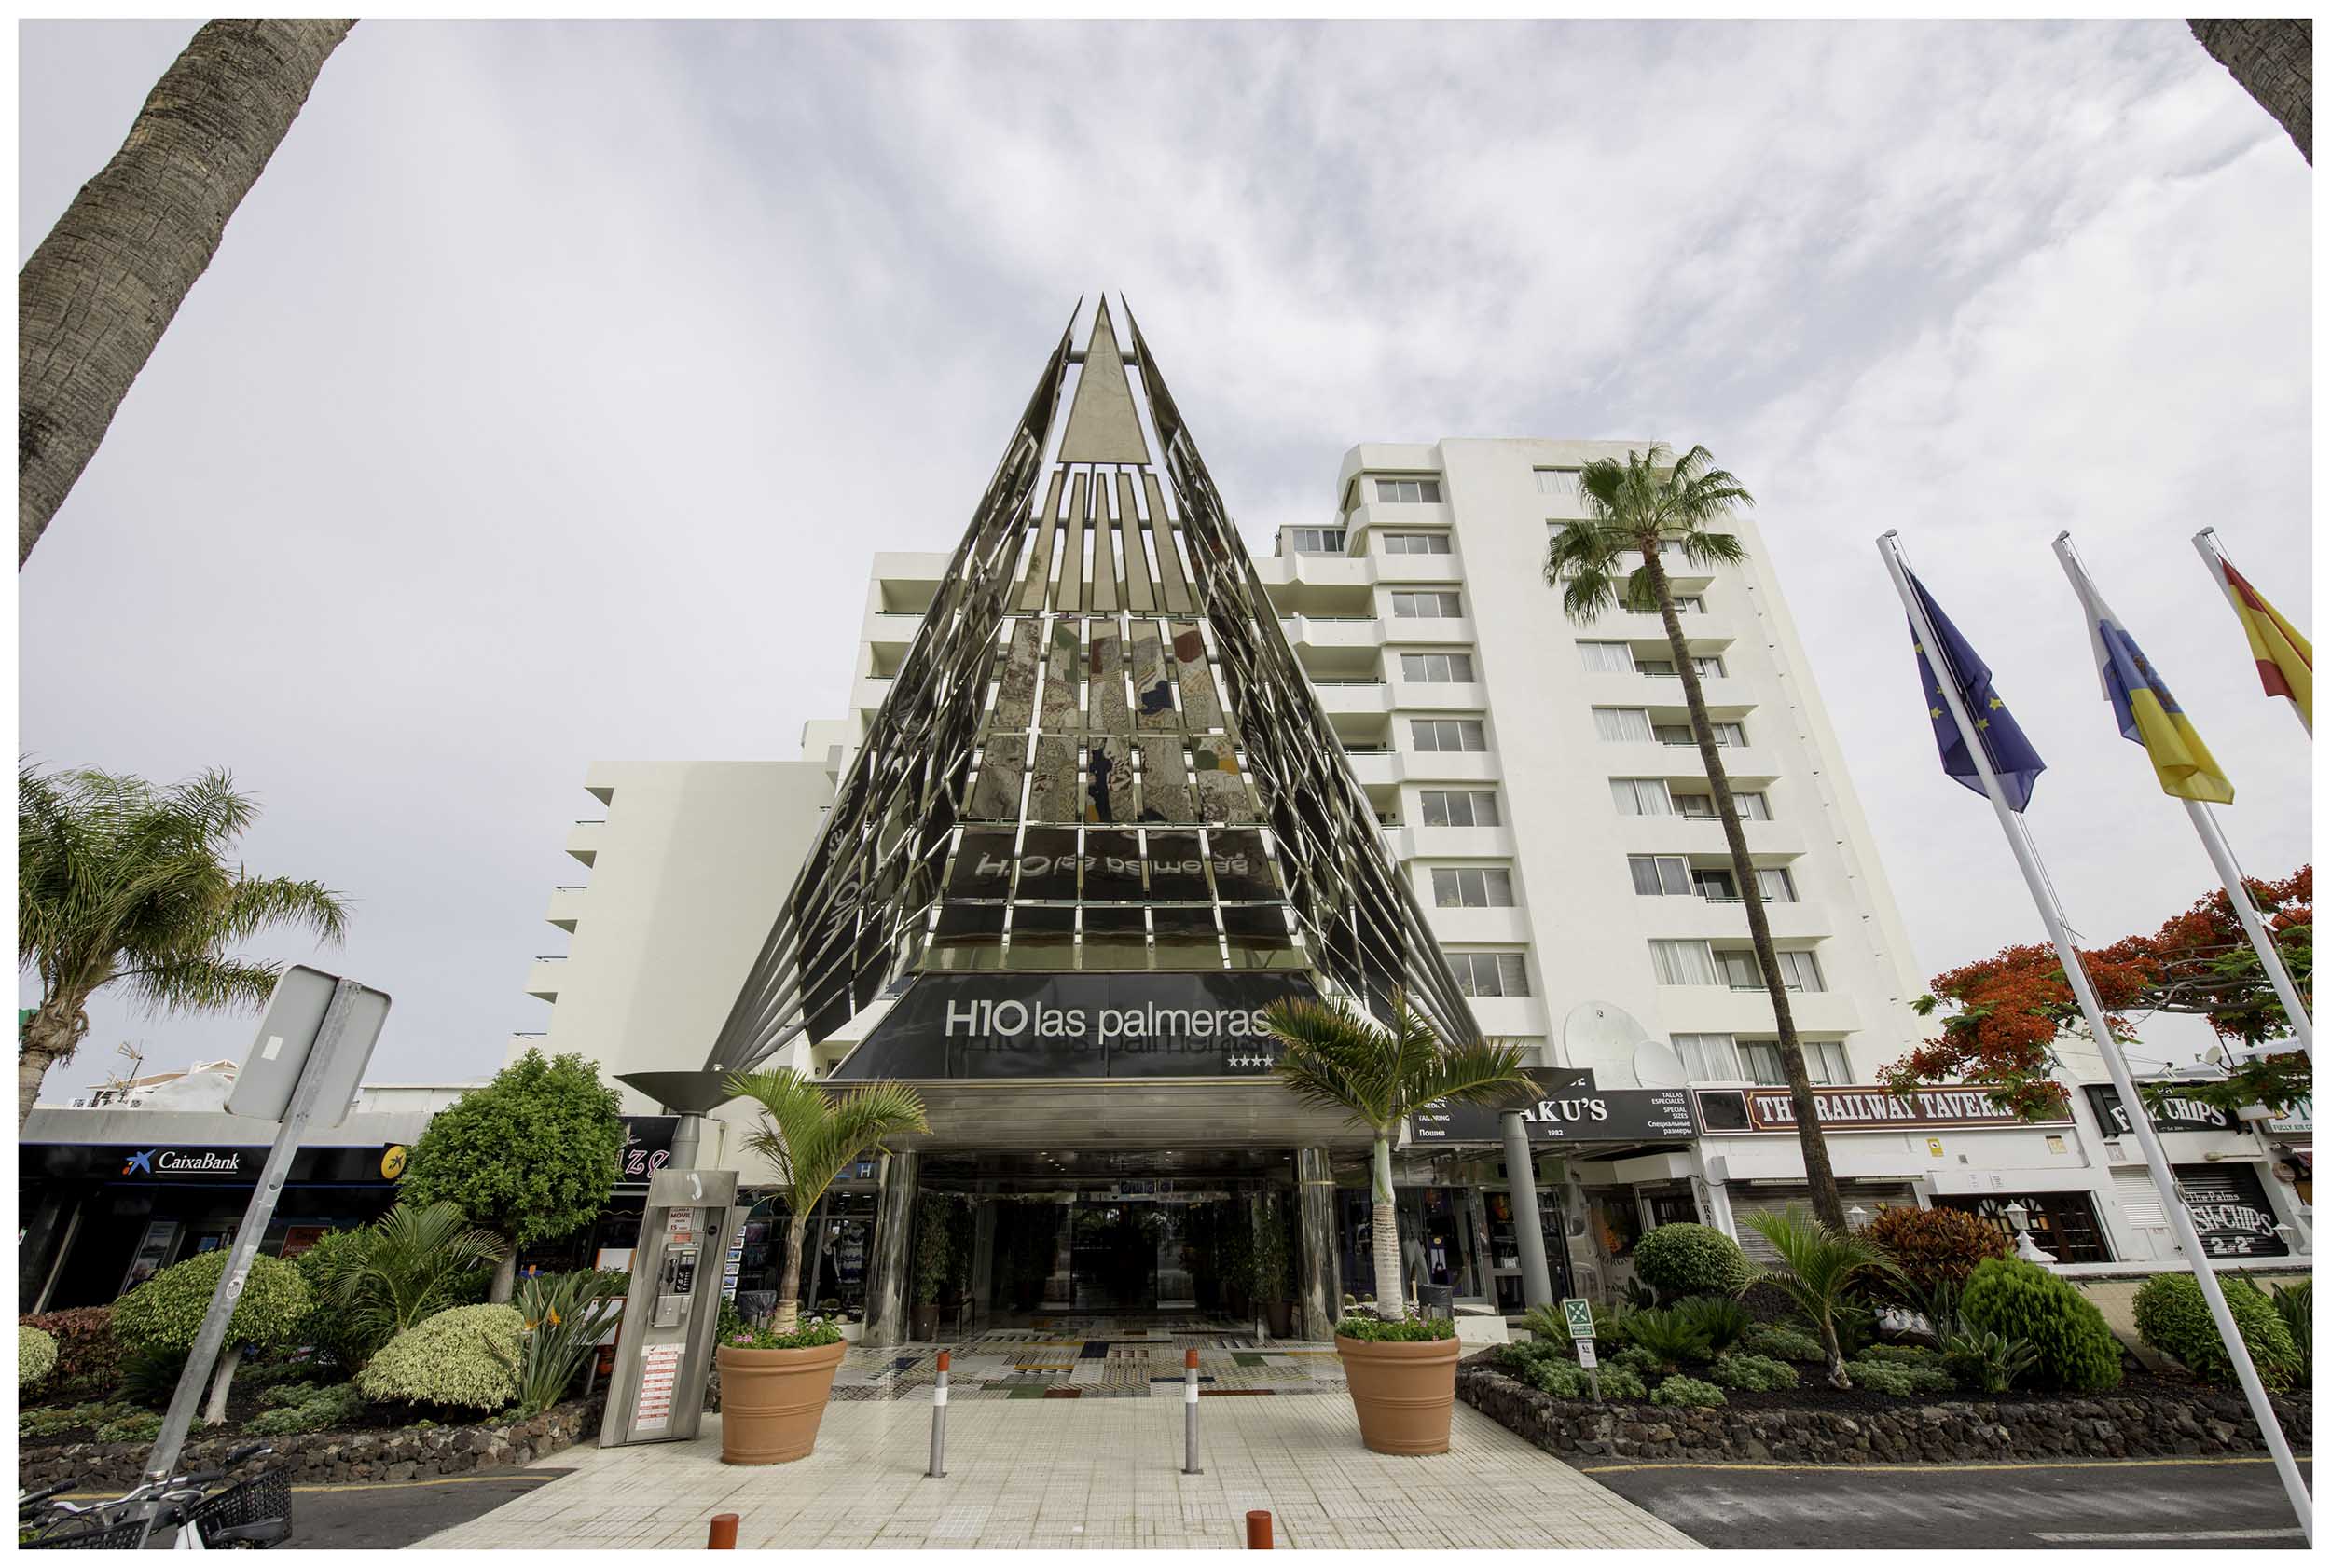 el fin Operación posible El propietario Hotel H10 Las Palmeras (Tenerife) Rehabilitación - Dressler Aluminios